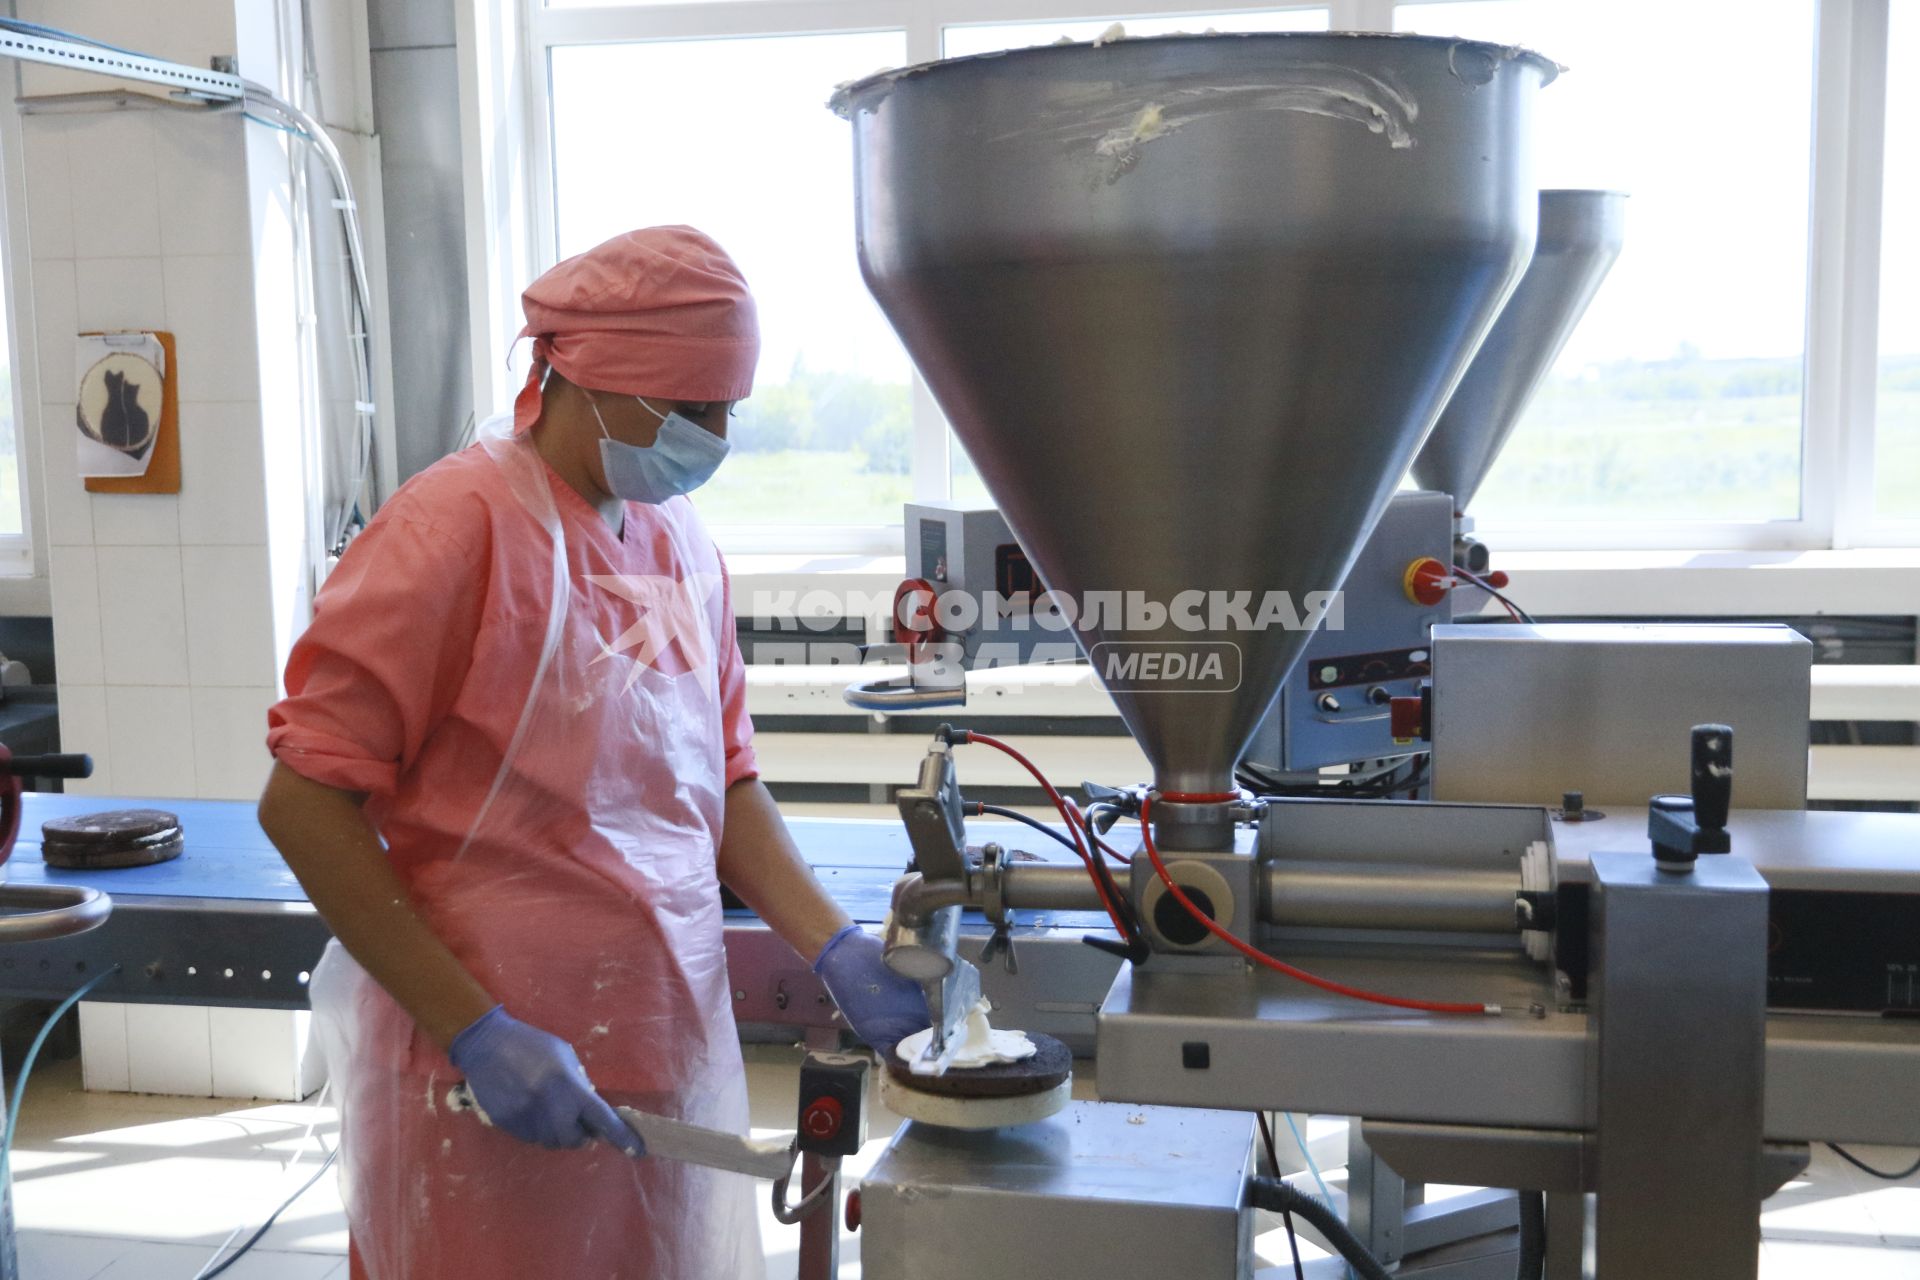 Барнаул. Работница наносит крем на корж с помощью дозатора на кондитерской фабрике.